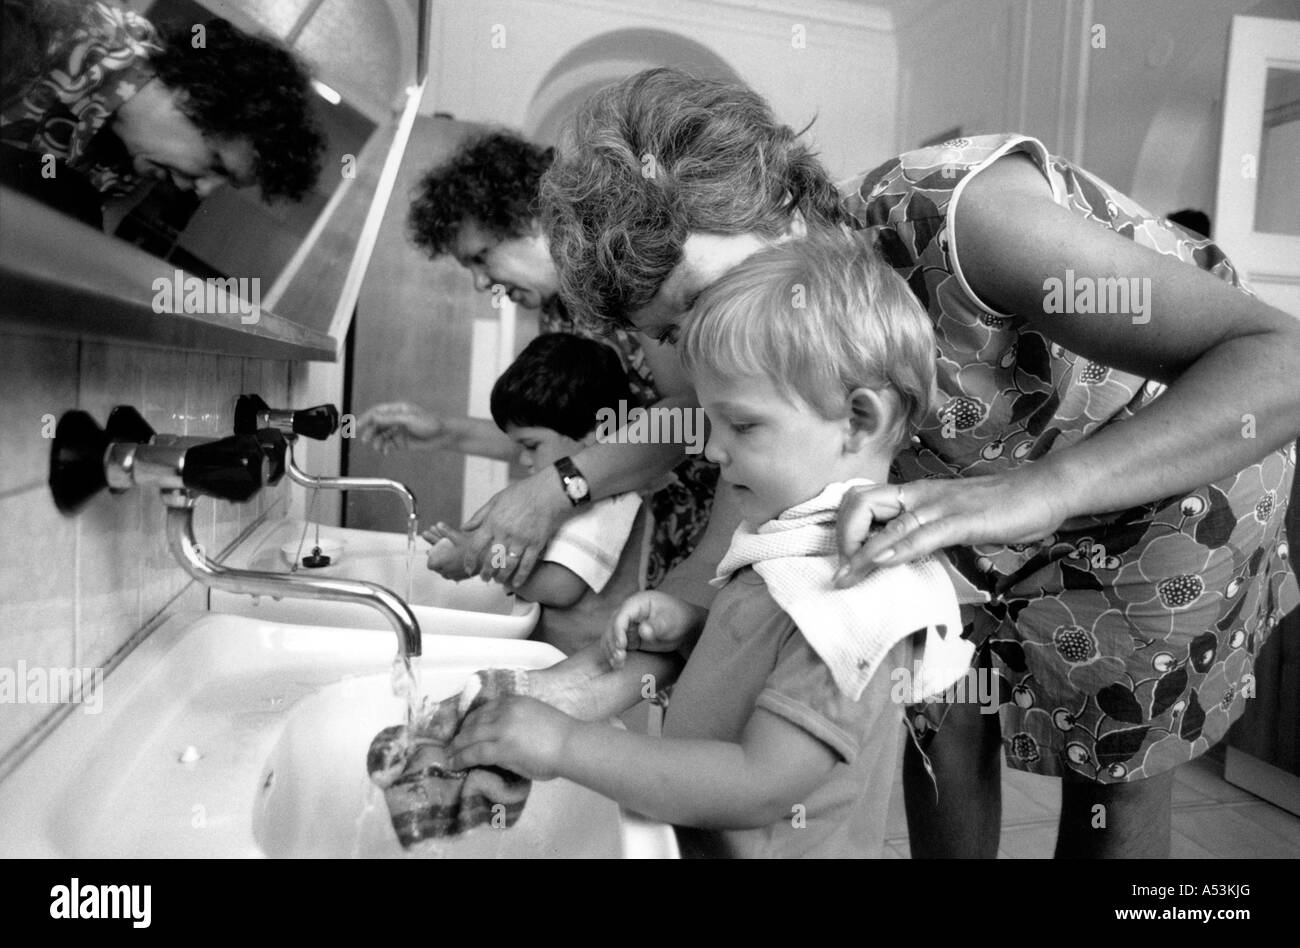 Painet ha1284 071 schwarz / weiß Frau Kind junge Gesundheit Bewusstsein Assistenten Kinderhilfe waschen Waisenhaus Prag Tschechien Stockfoto